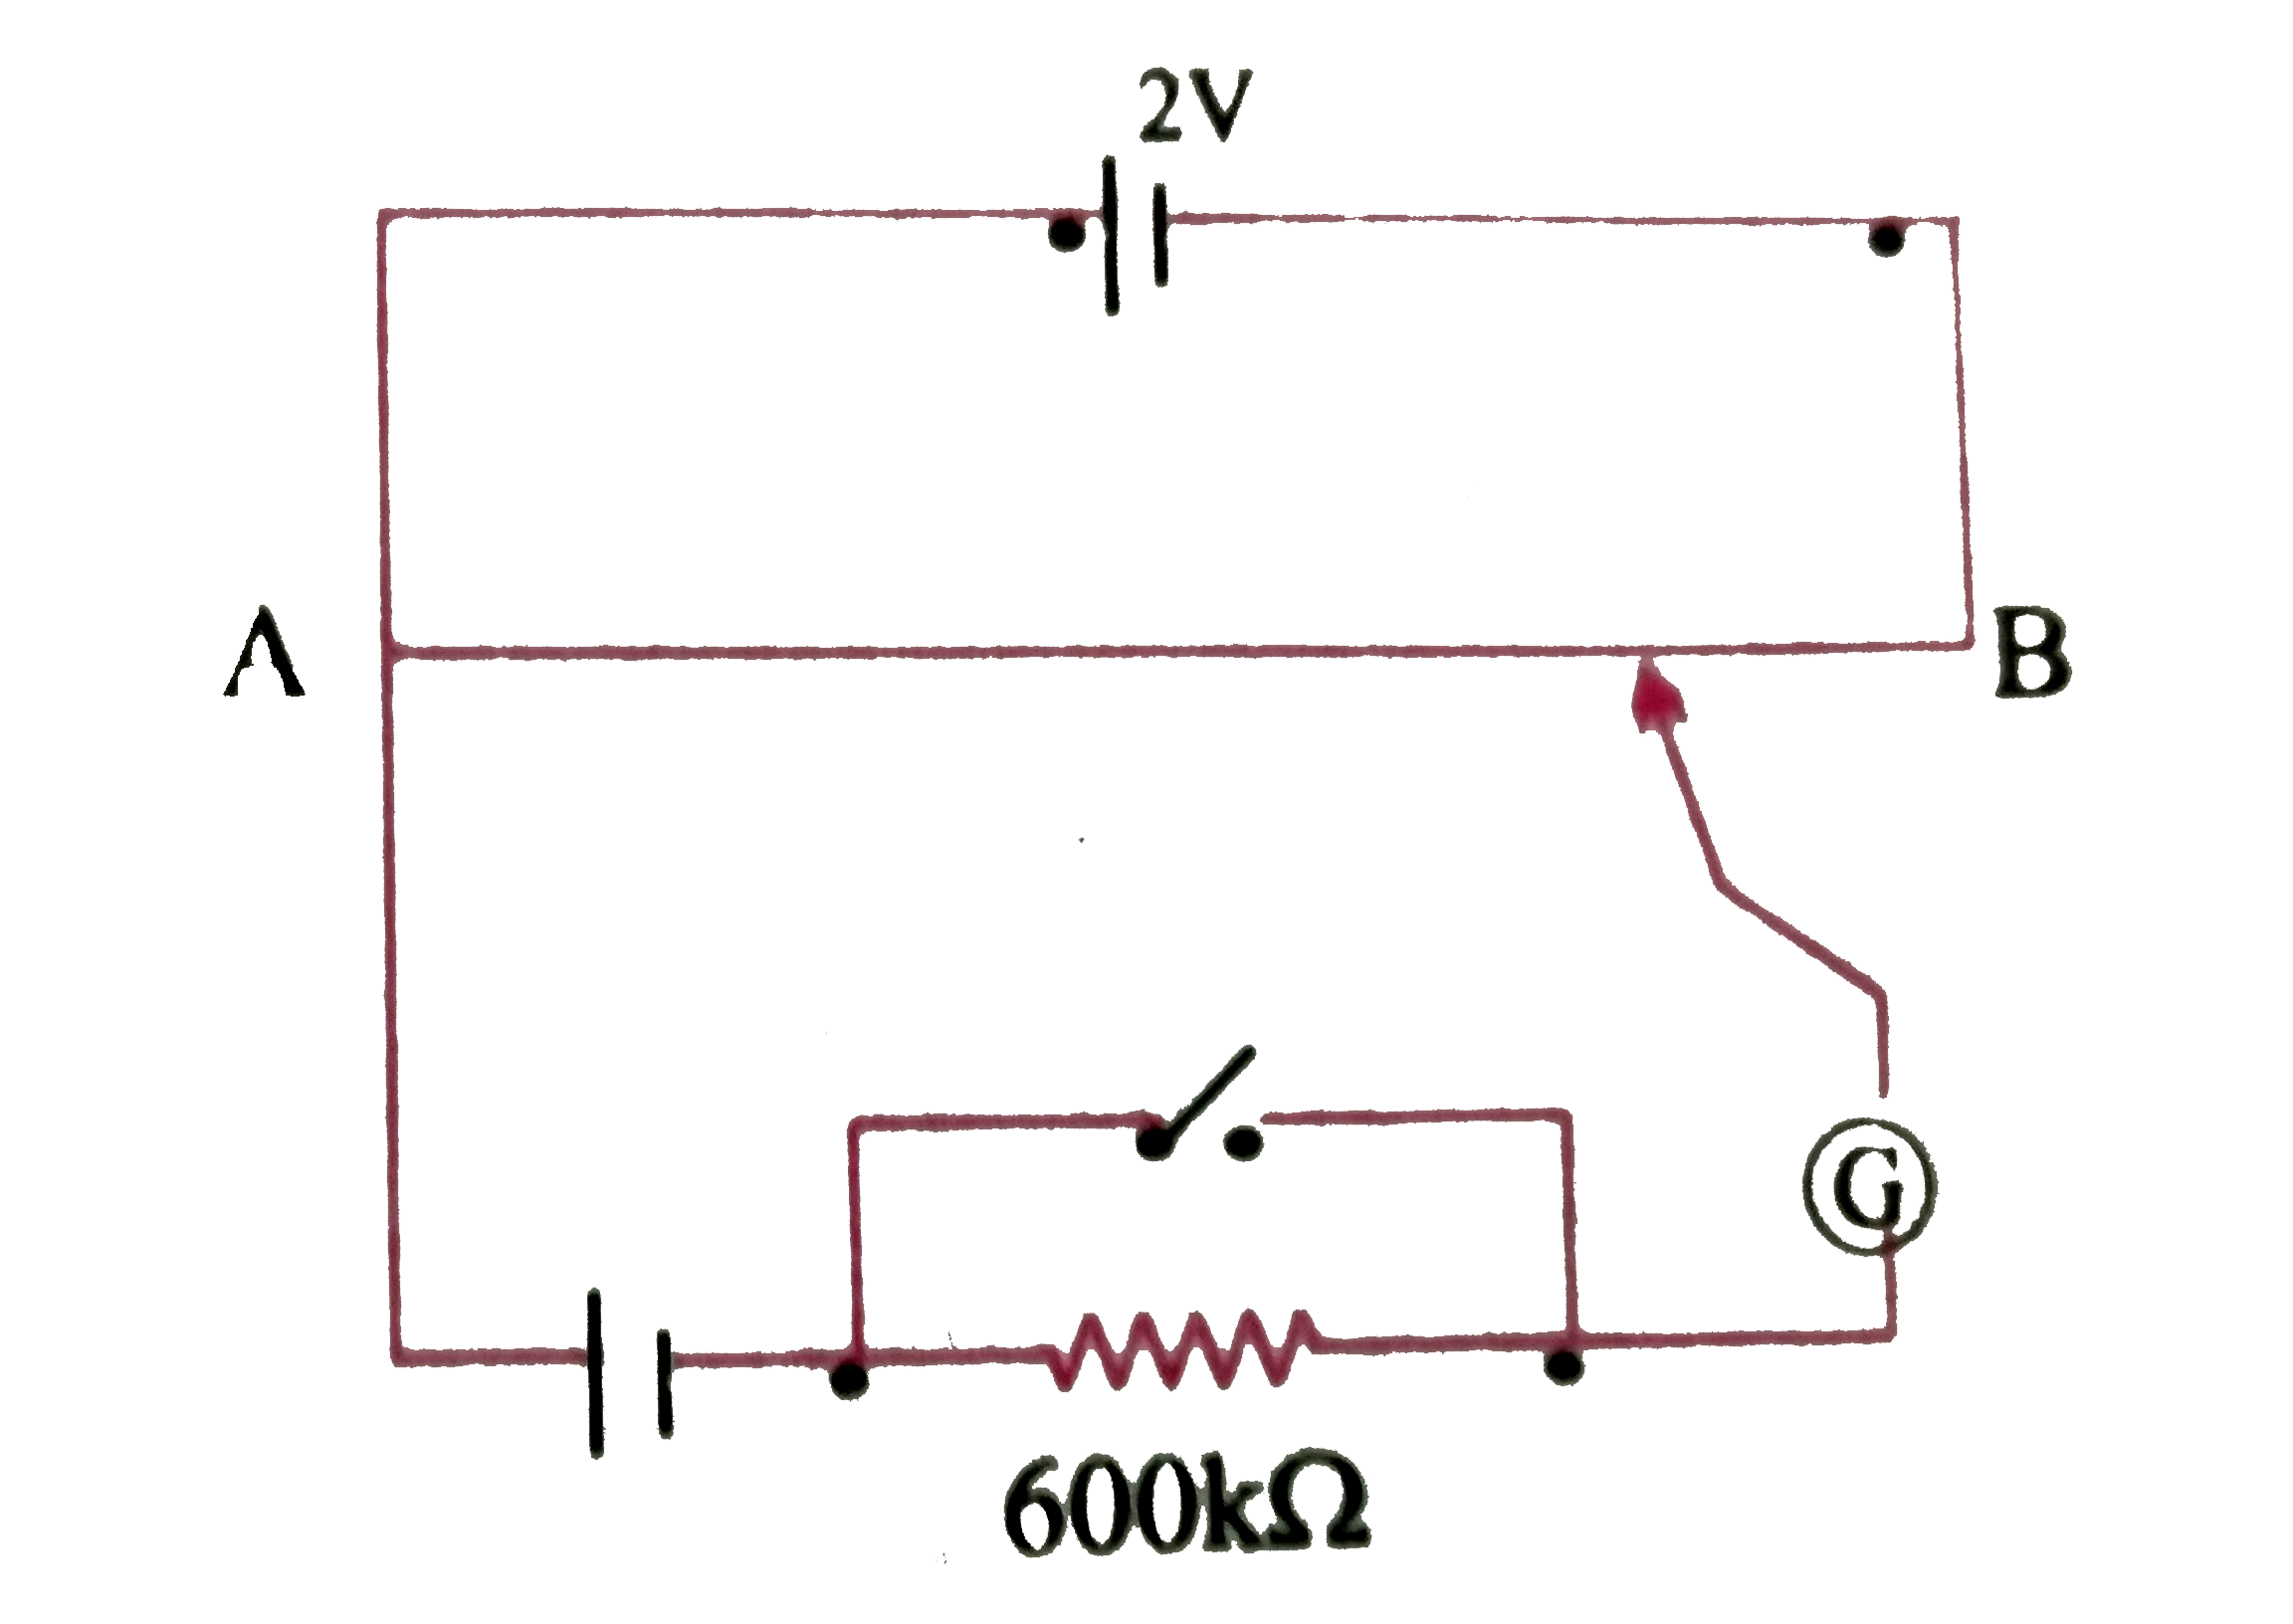 चित्र में एक वोल्ट्मीटर दर्शाए गया है  जिसमे एक 2.0V और आंतरिक प्रतिरोध 0.40 Omega  का कोई सेल  वोल्ट्मीटर  के प्रतिरोधक तार AB पर वोलटता पात बनाये  रखता है । कोई मानक सेल जो 1.02 V  का अचर  विद्युत  वाहक बल बनये रखता है ( कुछ  mA की बहुत  सामान्य  धाराओं के लिए ) तार की  67.3 सेमी लम्बाई  पर संतुलन बिंदु देती है । मानक सेल से अति न्यून धारा लेना  सुनिश्चित करने के लिए इसके साथ परिपथ में श्रेणी 600 k Omega  का एक अति उच्च प्रतिरोध इसके साथ  संबद्ध  किया जाता है , जिसके  संतुलन बिंदु प्राप्त होने के निकट  लघुपथित (Shorted) कर दिया जाता है । इसके बाद मानक  सेल को किसी  अज्ञात  विद्युत बल के सेल से प्रतिस्थापित कर दिया जाता  है । जिससे संतुलन बिंदु तार की 82.3 सेमी लम्बाई पर प्राप्त  होता है ।    (b ) 600 k Omega  के उच्च प्रतिरोध  का क्या प्रयोजन है ?